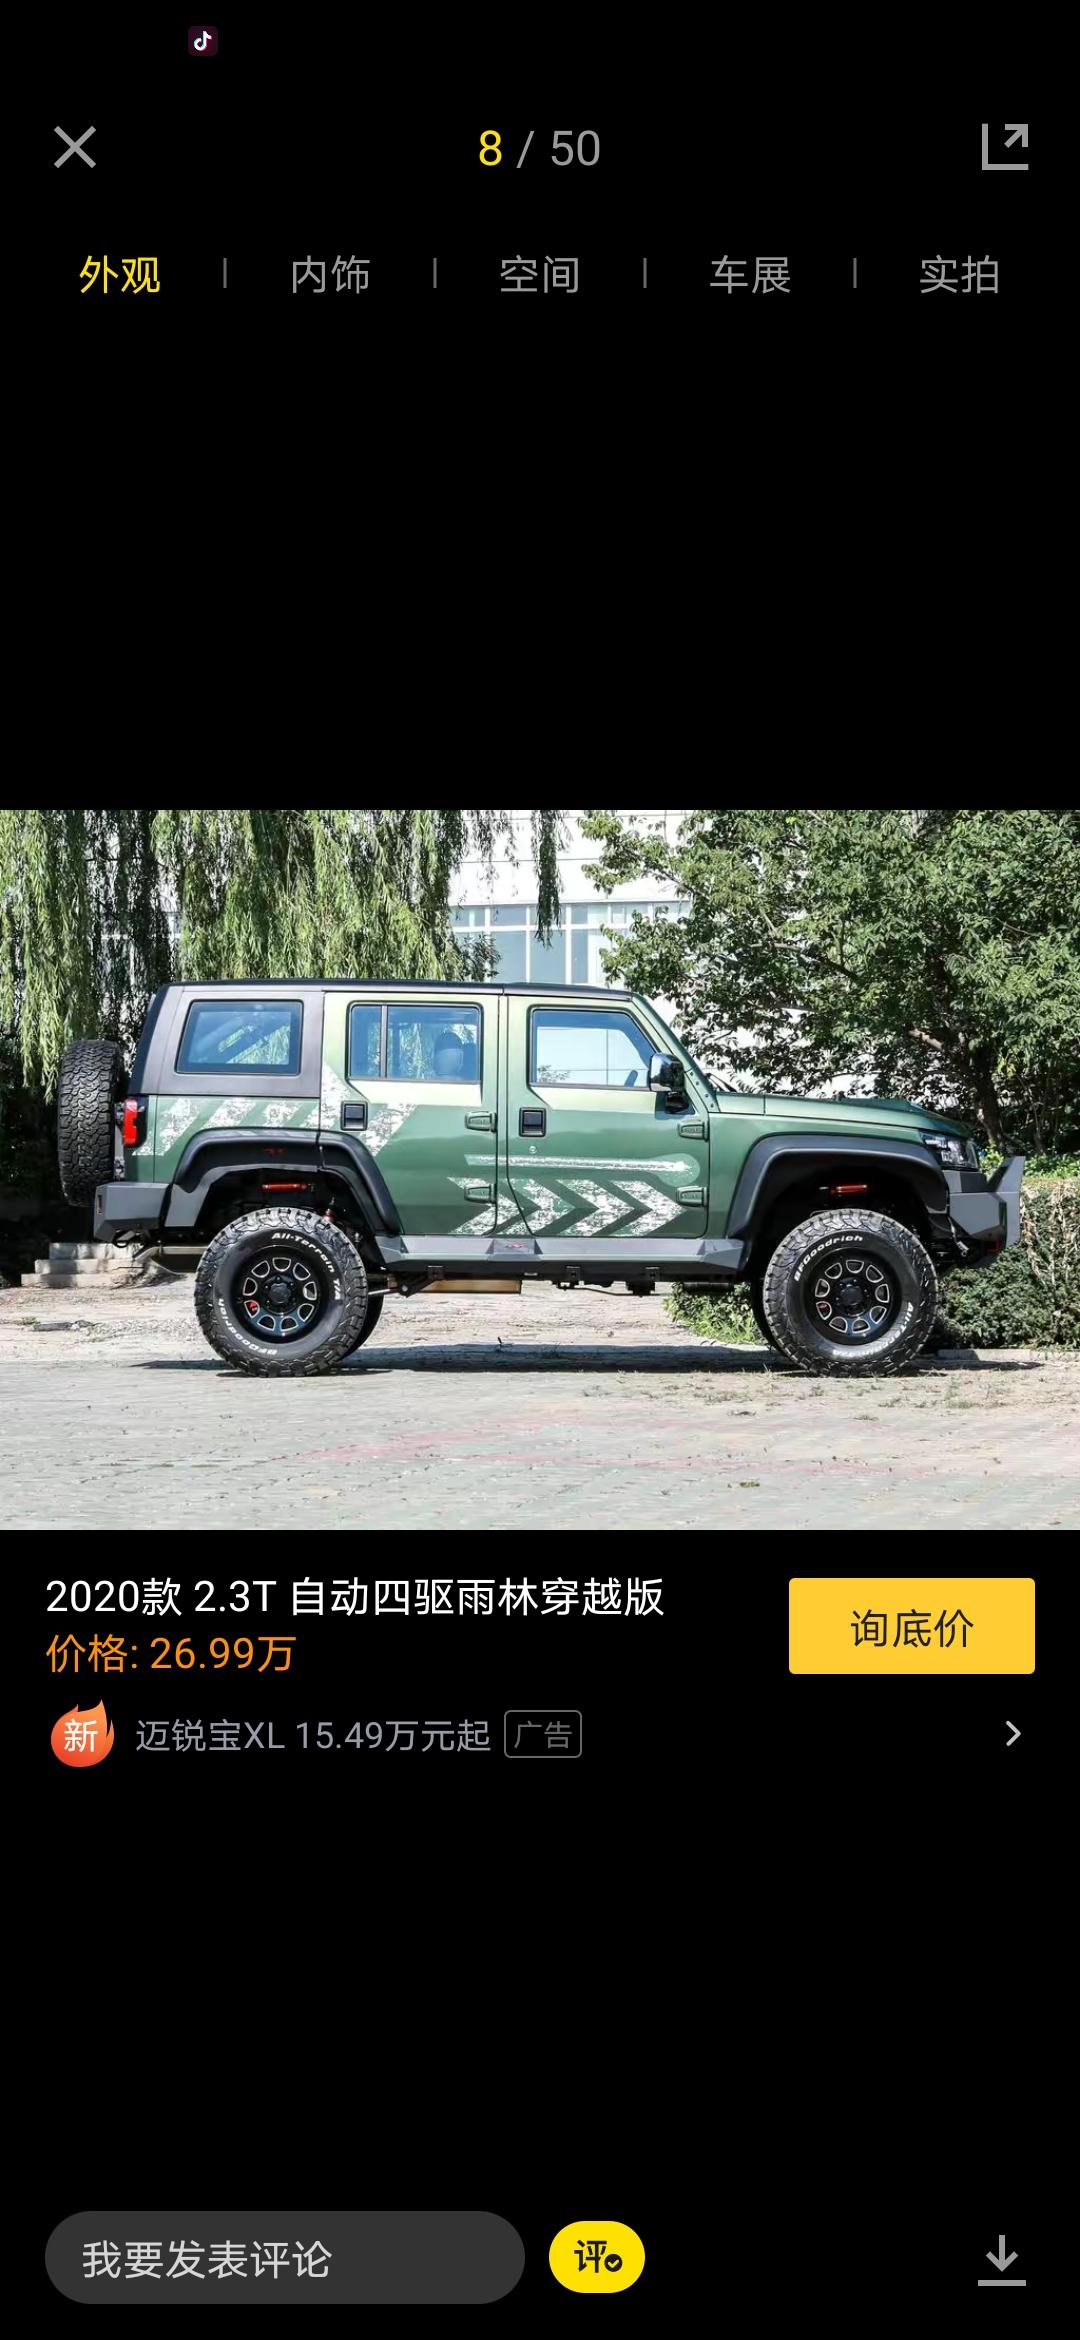 北京BJ40 这个雨林穿越版怎么样 想入手但是得等到明年   轮胎感觉好像有点小了 能换大点的吗 对其他配置会有损伤吗